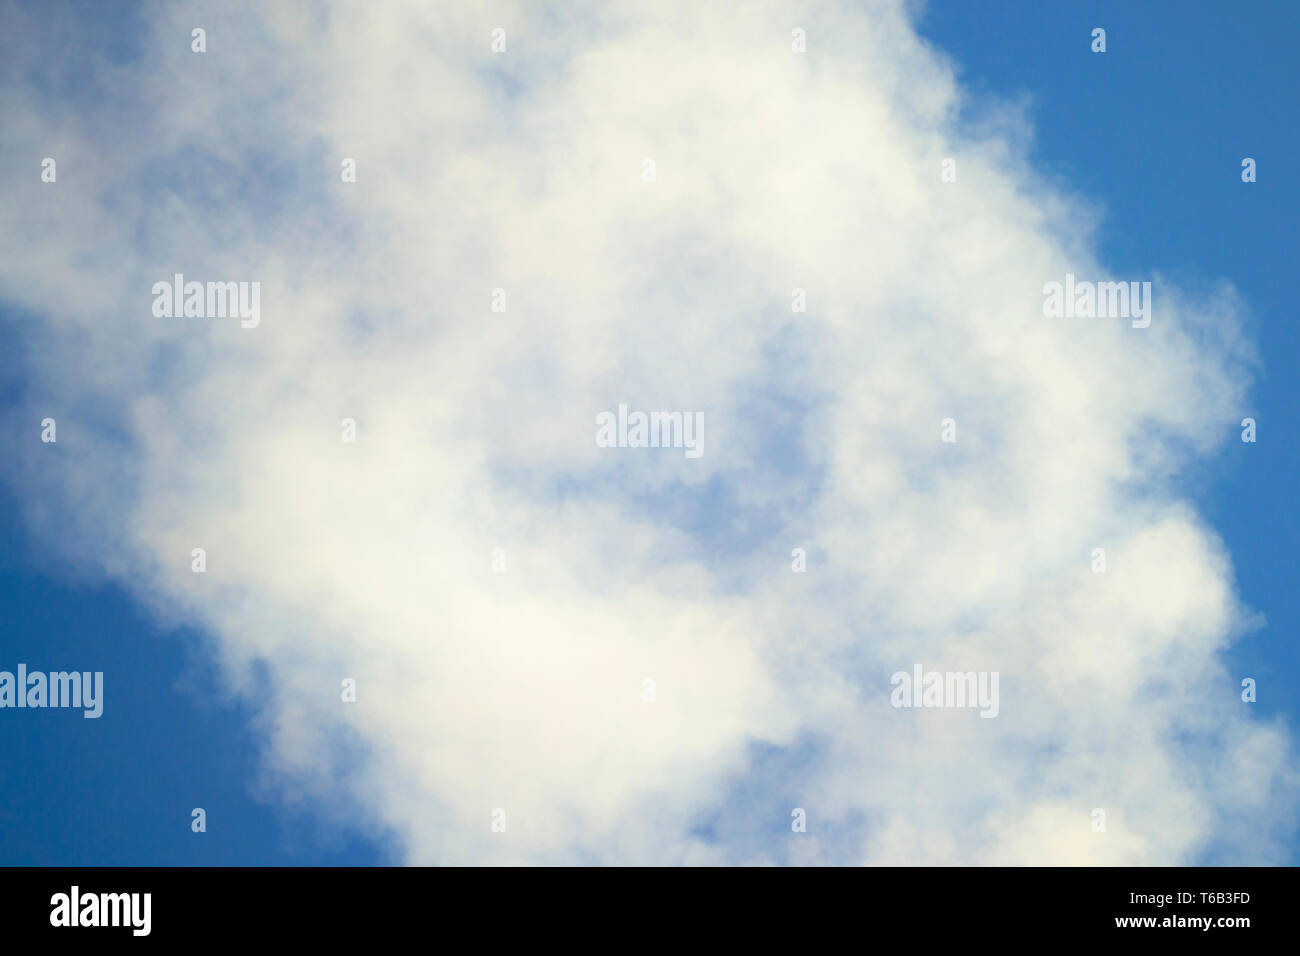 Zusammenfassung Hintergrund weißer Rauch auf einem klaren blauen Himmel Stockfoto